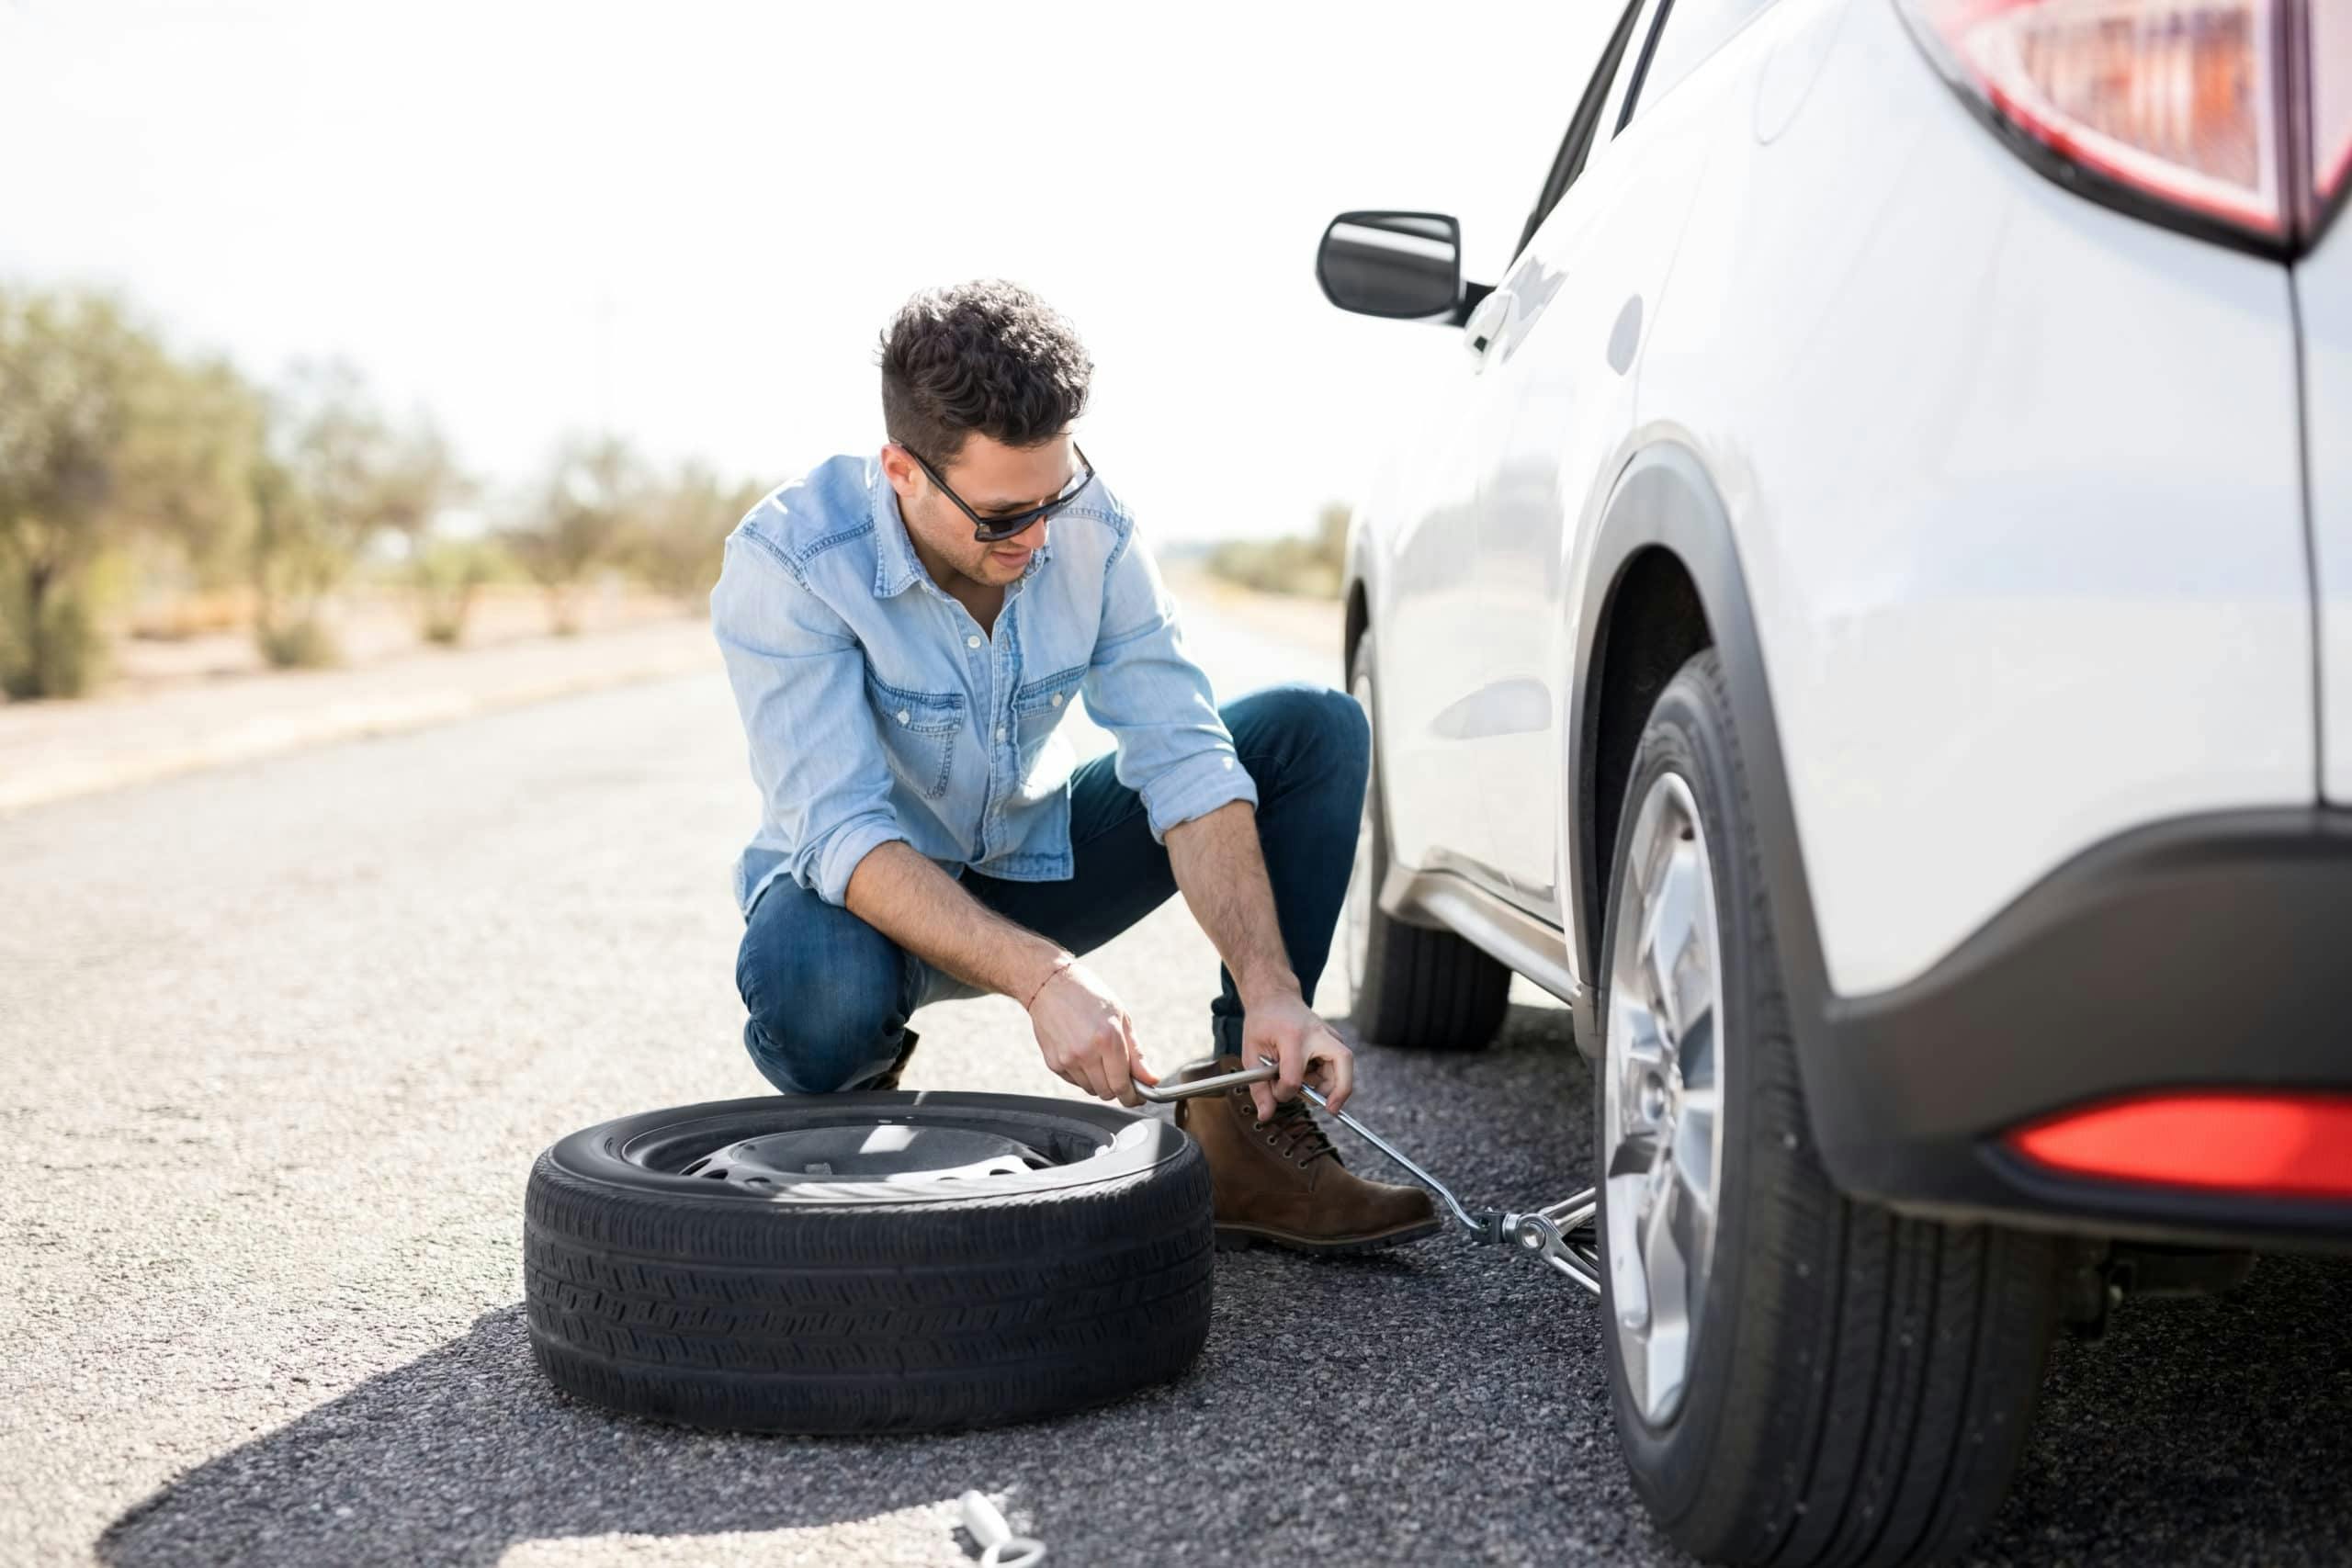 Crevaison ou éclatement d'un pneu : quelle est la différence et que  devez-vous faire?